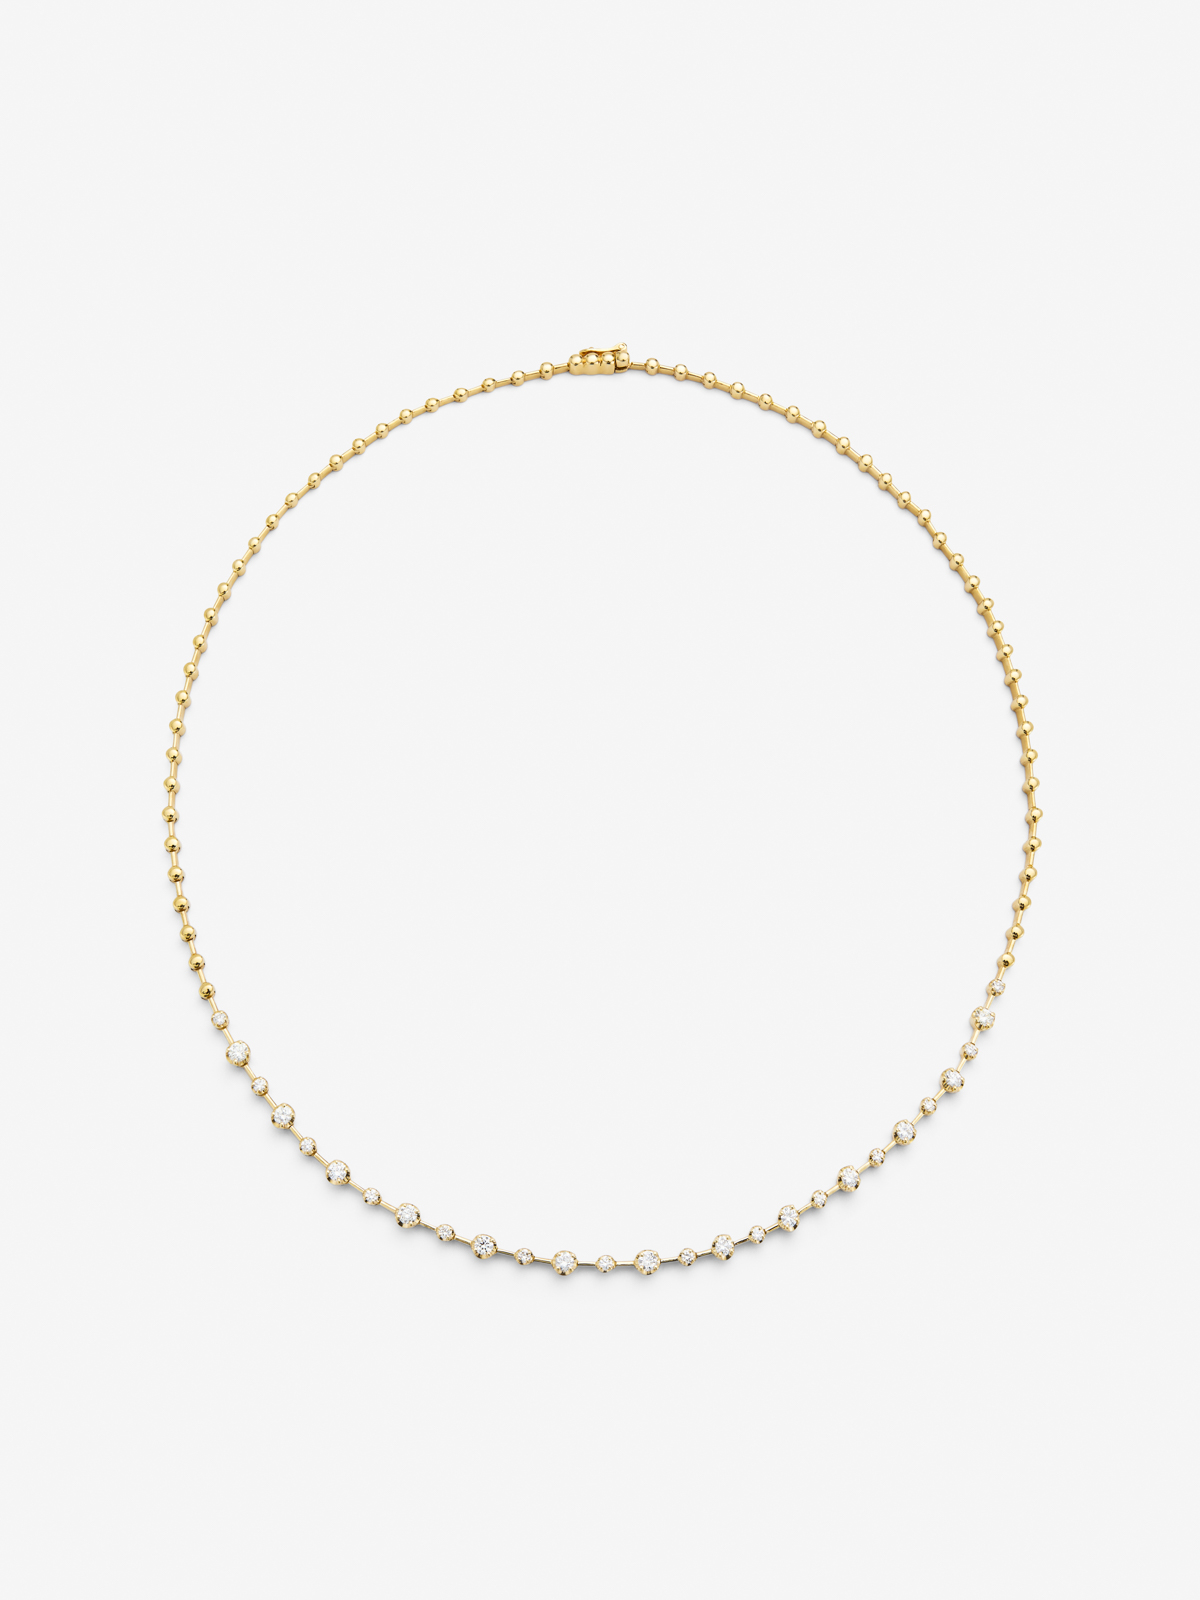 Collar de oro amarillo de 18K con diamantes blancos en talla brillante de 0,95 cts